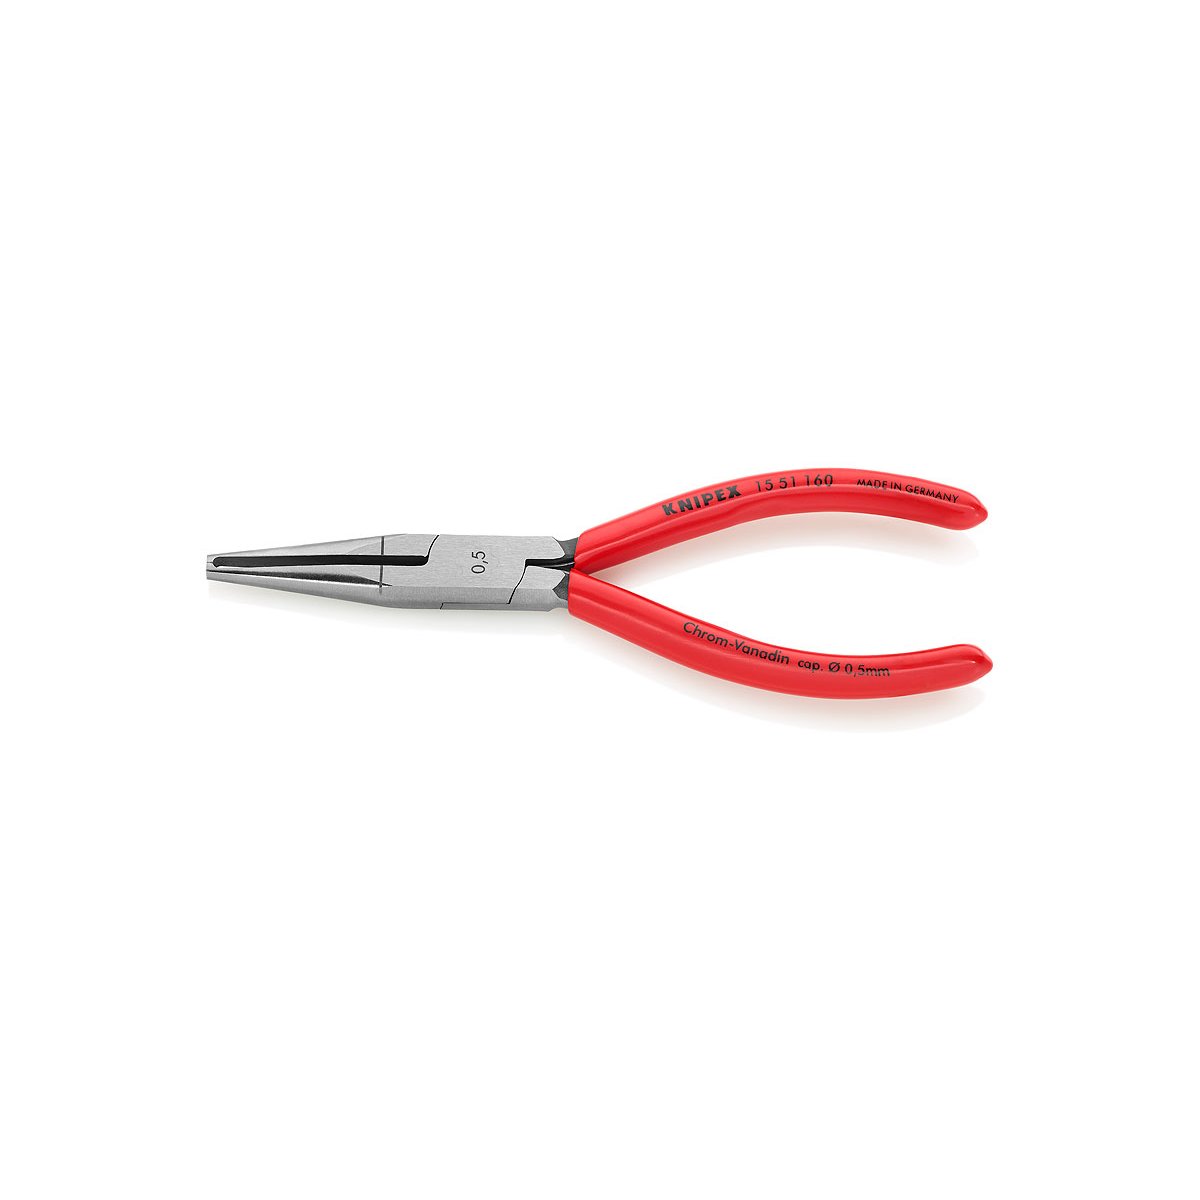 Стриппер для тонких кабелей, Ø 0.5 мм, прецизионная призма, 160 мм, обливные ручки